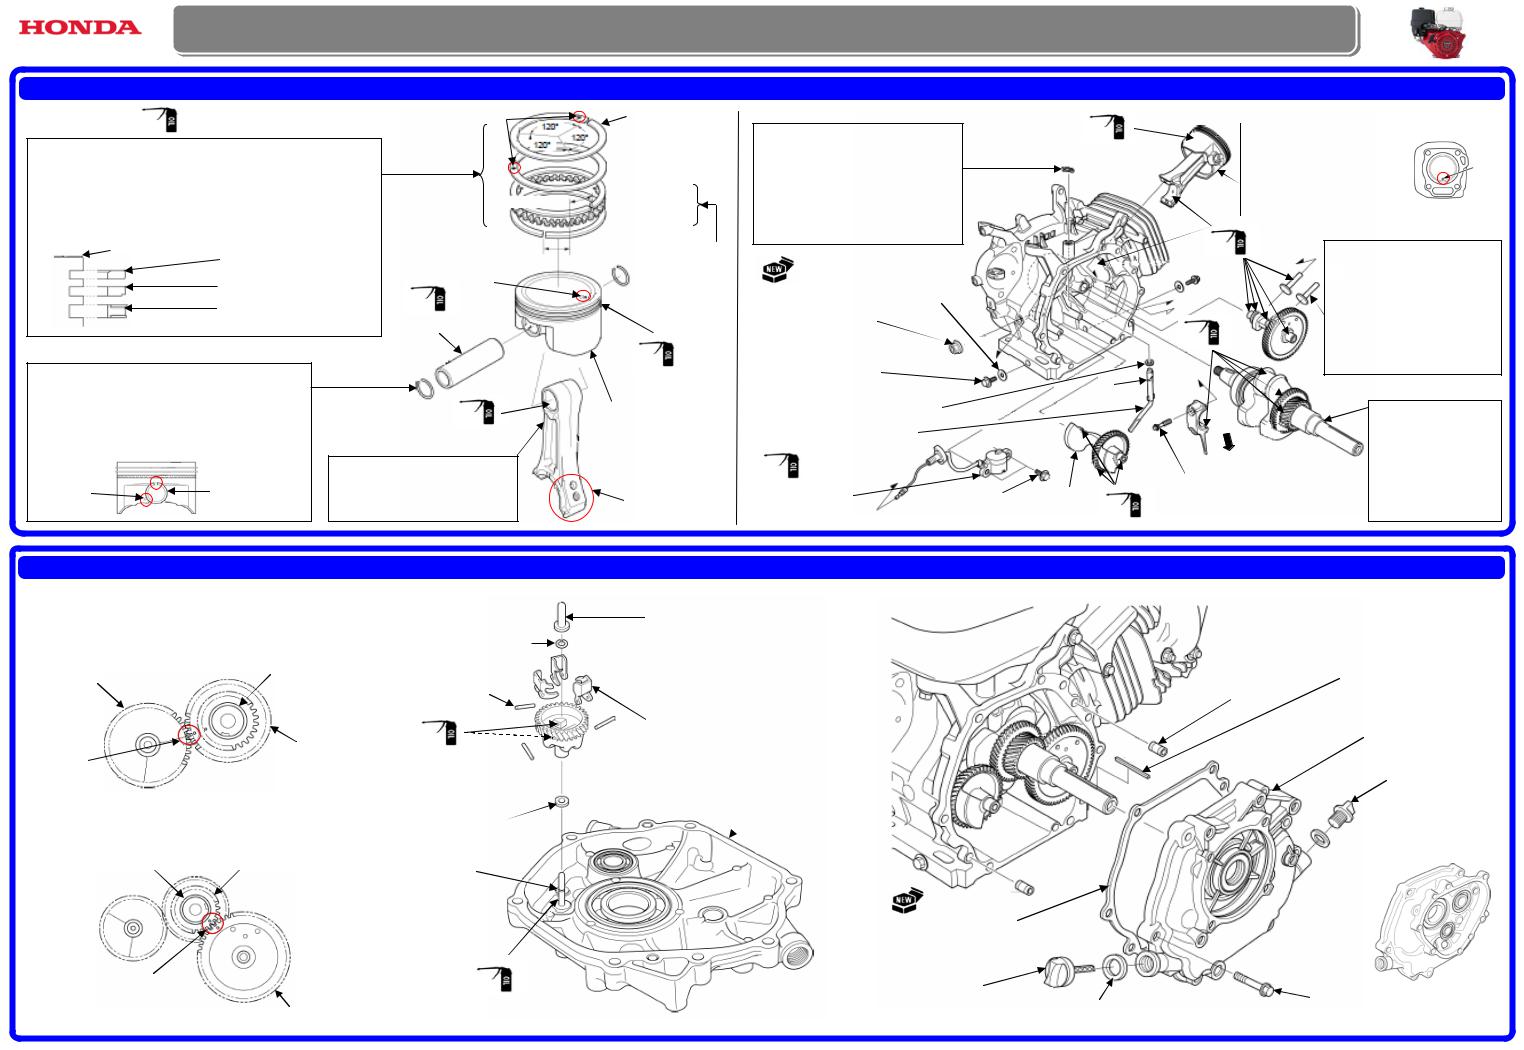 Honda GX270T2, GX270UT2, GX390T2, GX390UT2, GX390RT2 Information Manual